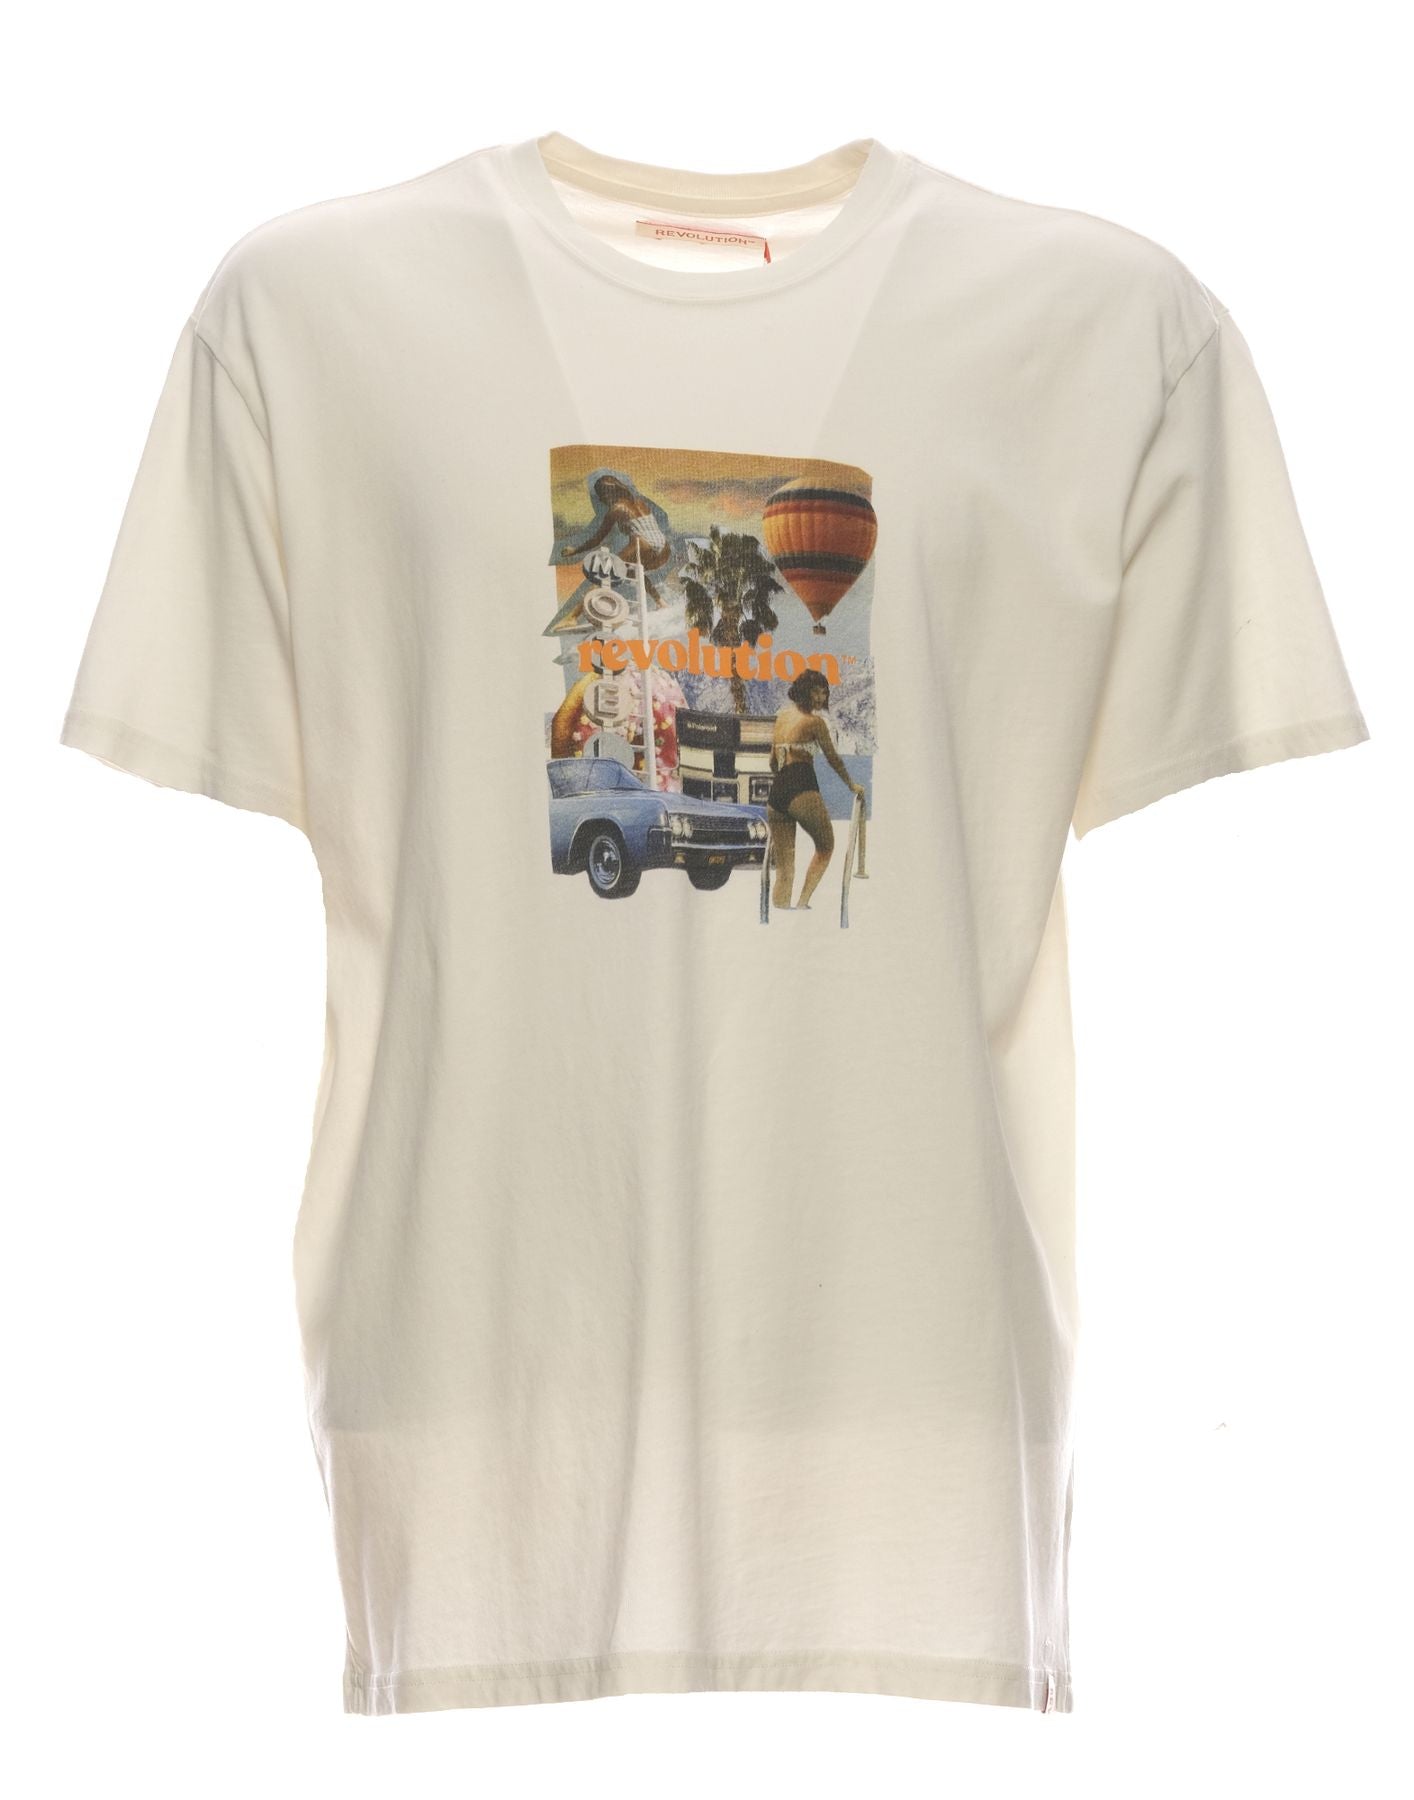 T-Shirt für Männer 1319 aus Weiß Revolution